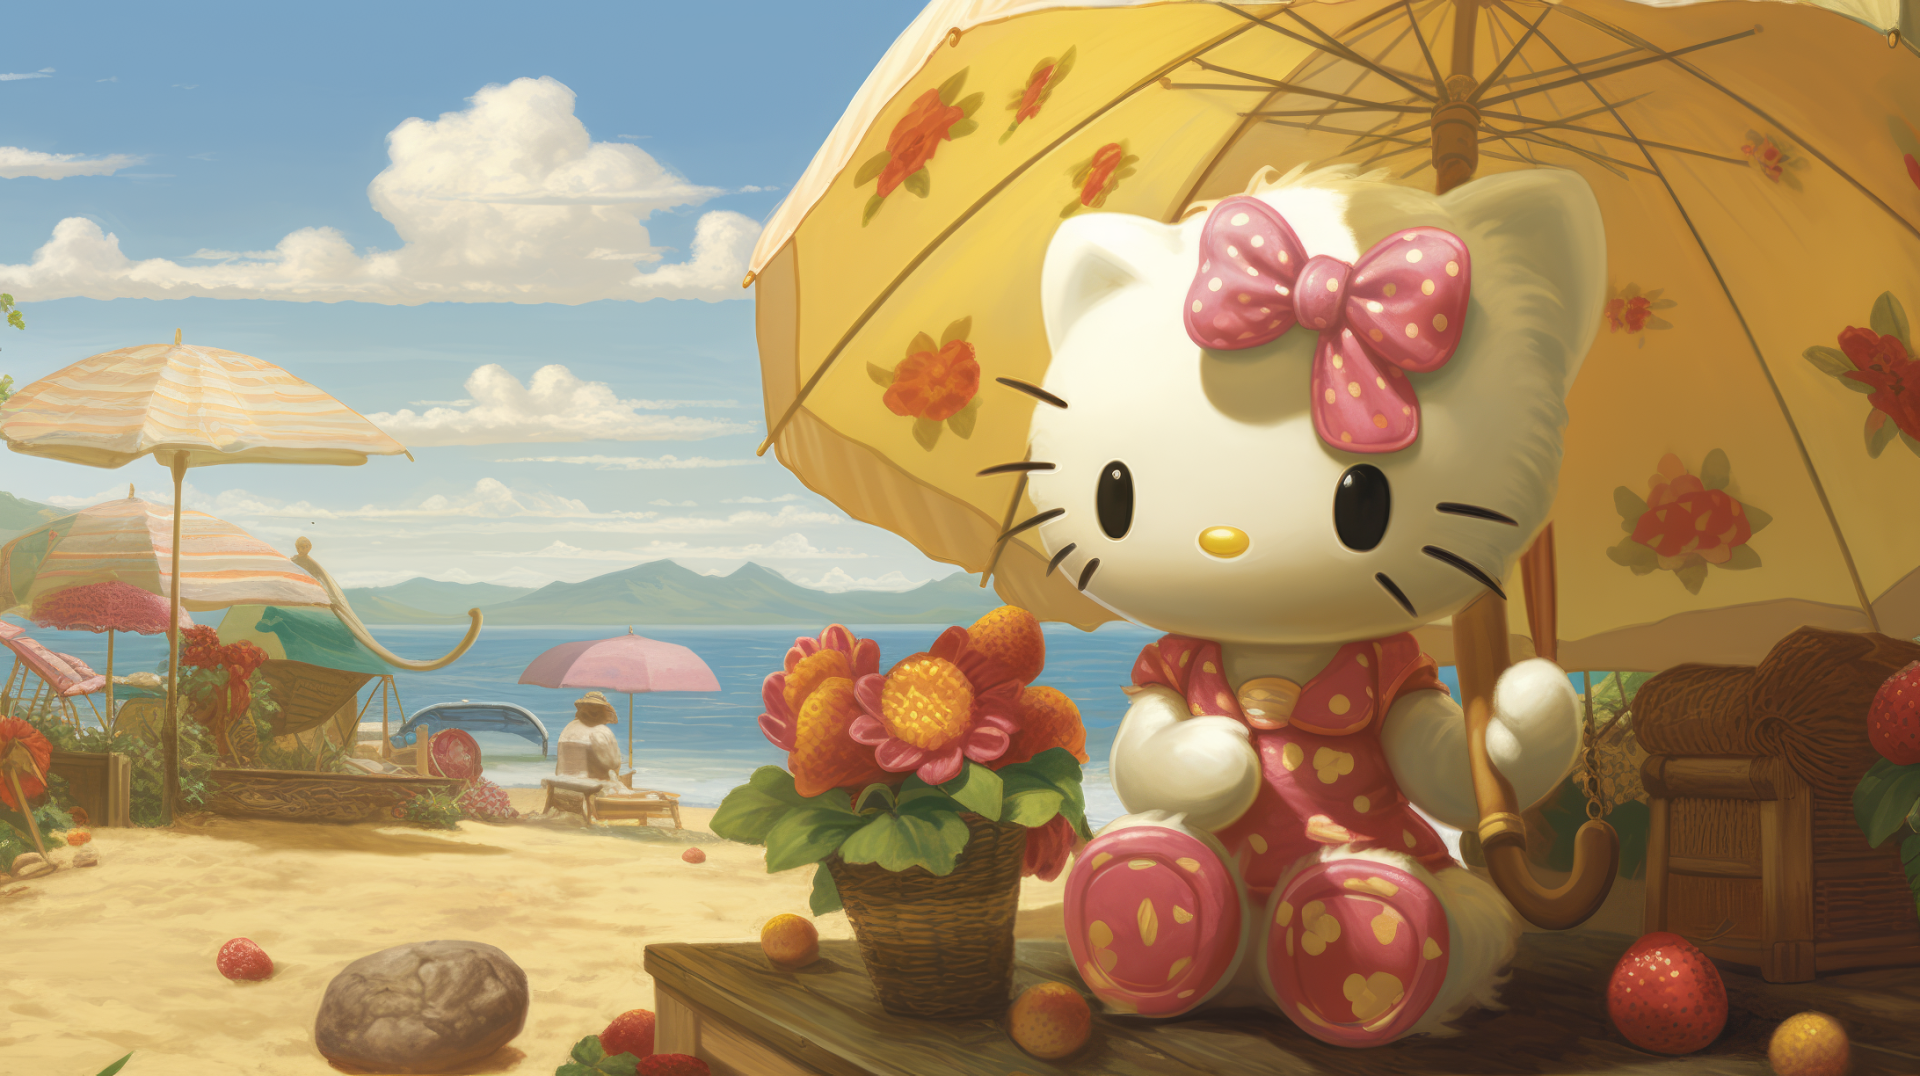 Hello Kitty World Wallpaper by patrika